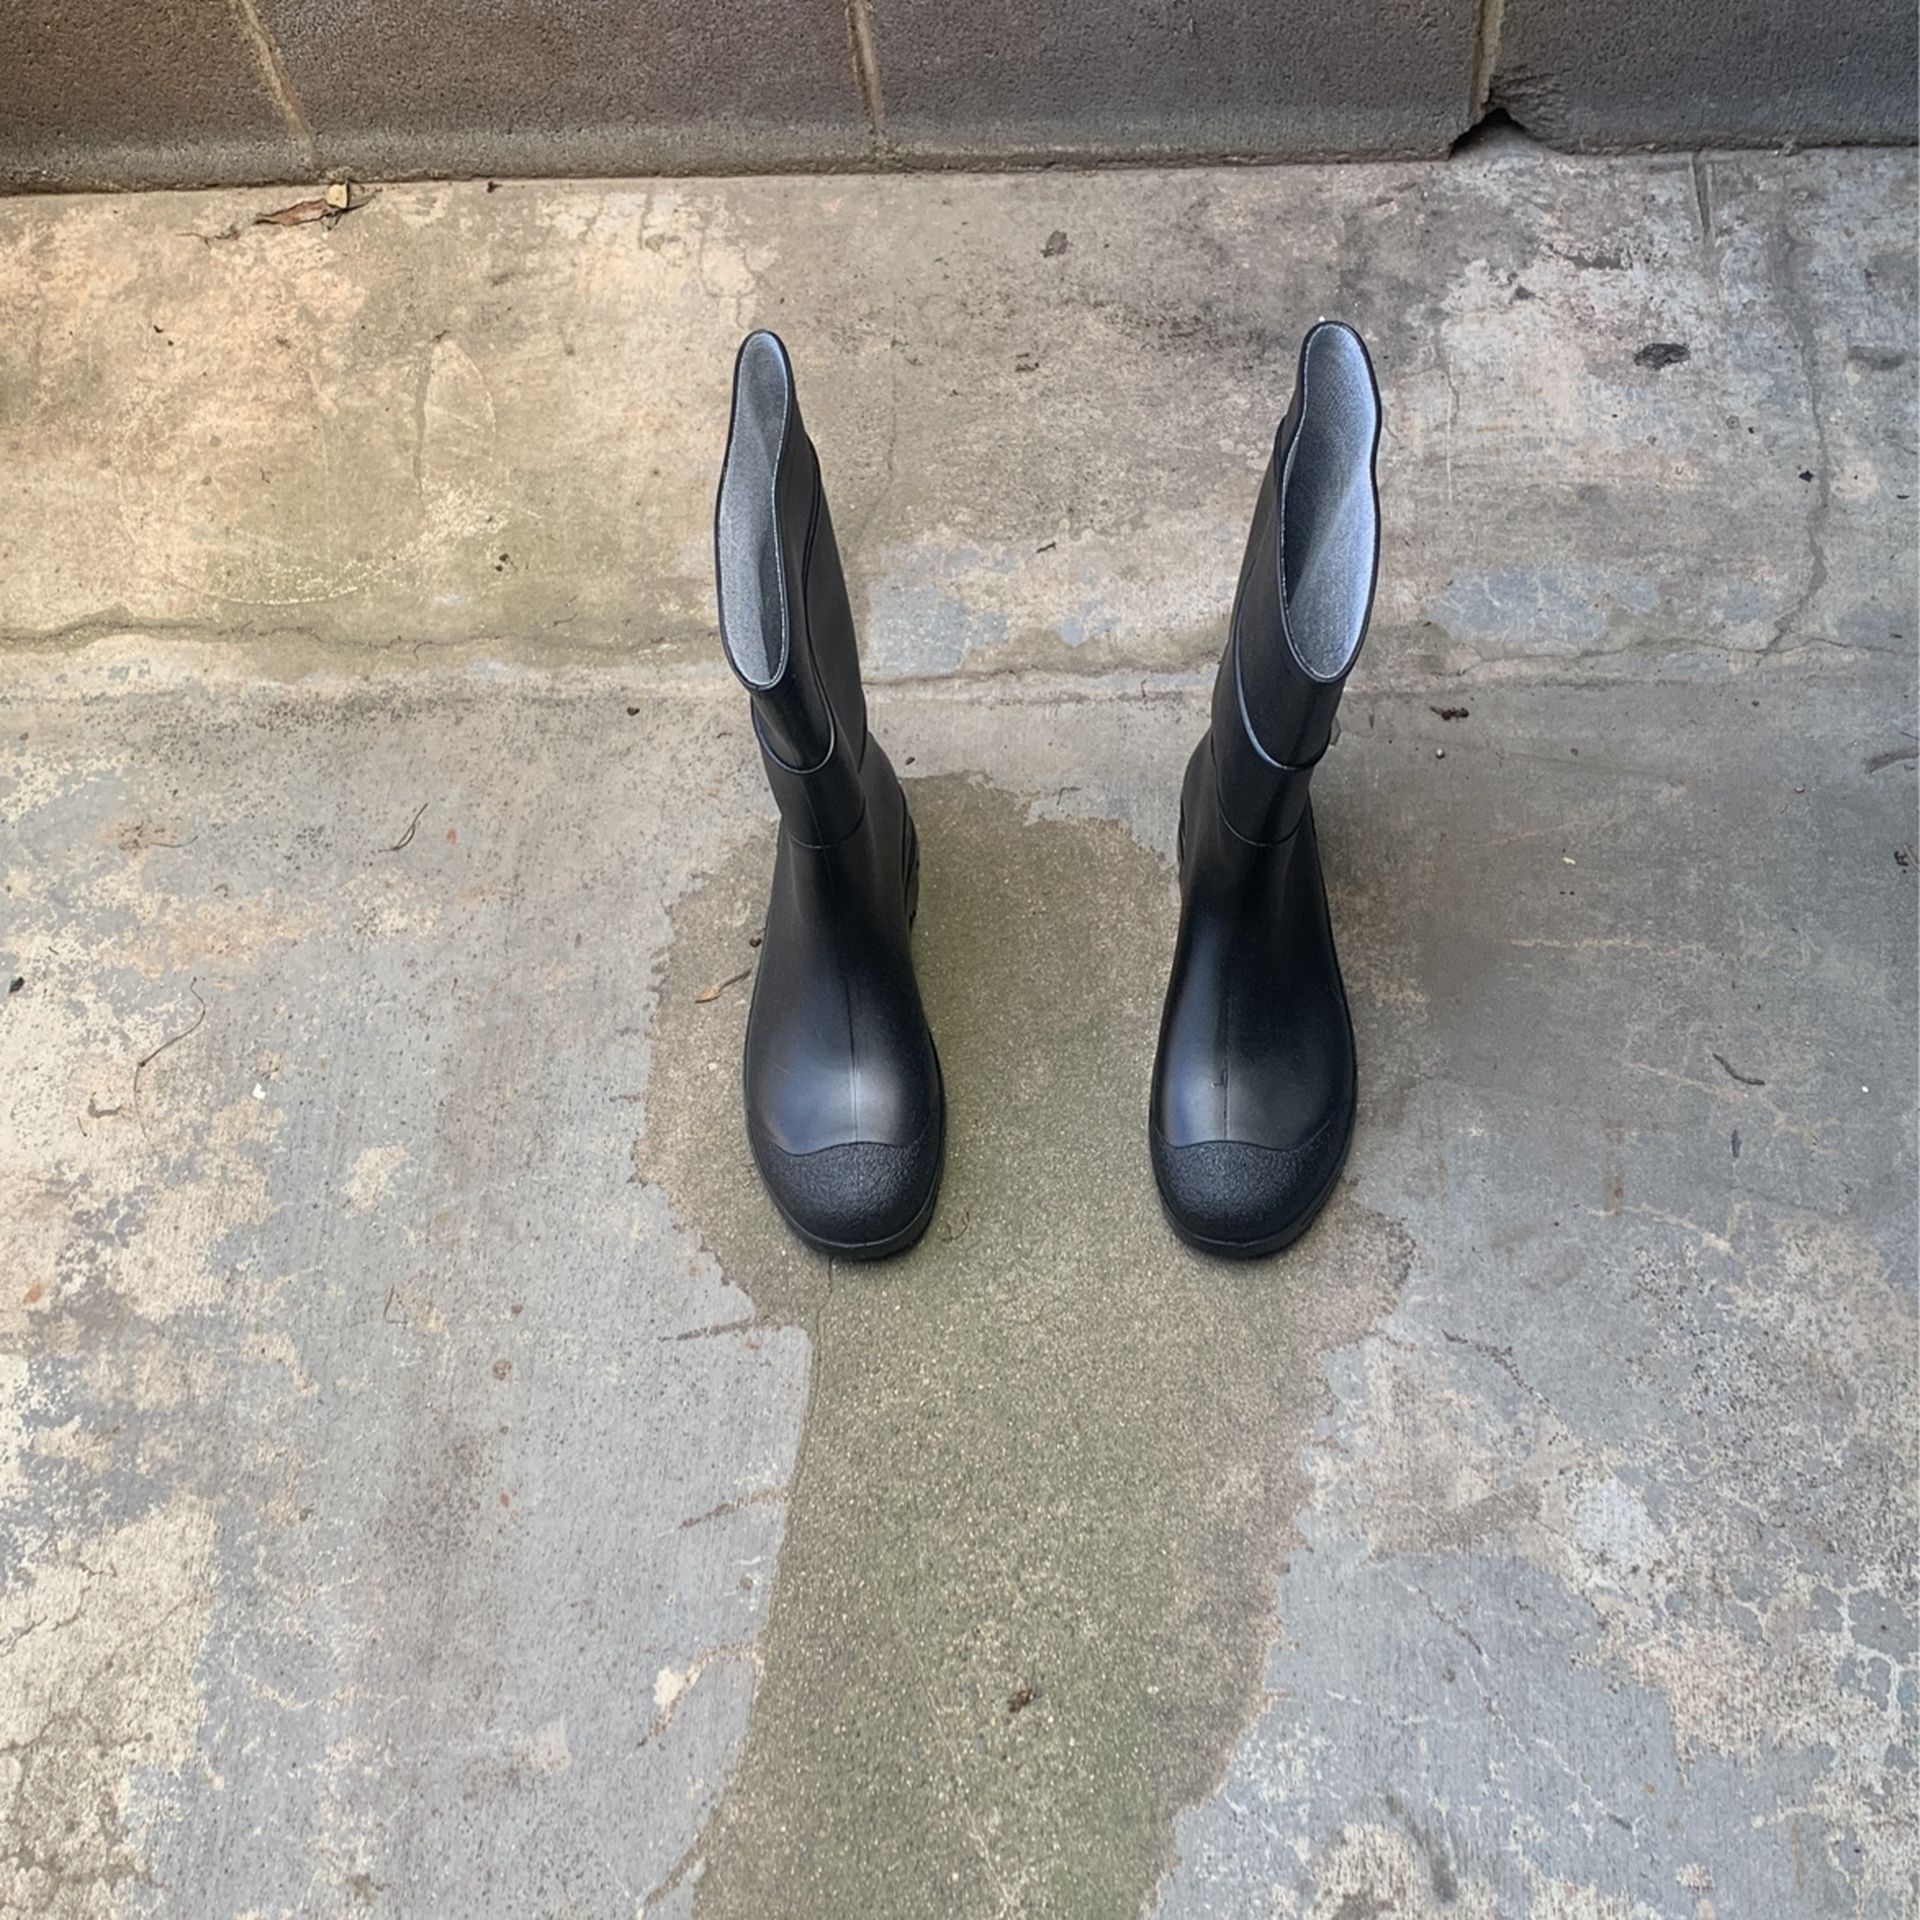 Servus Rubber Boots Size 11